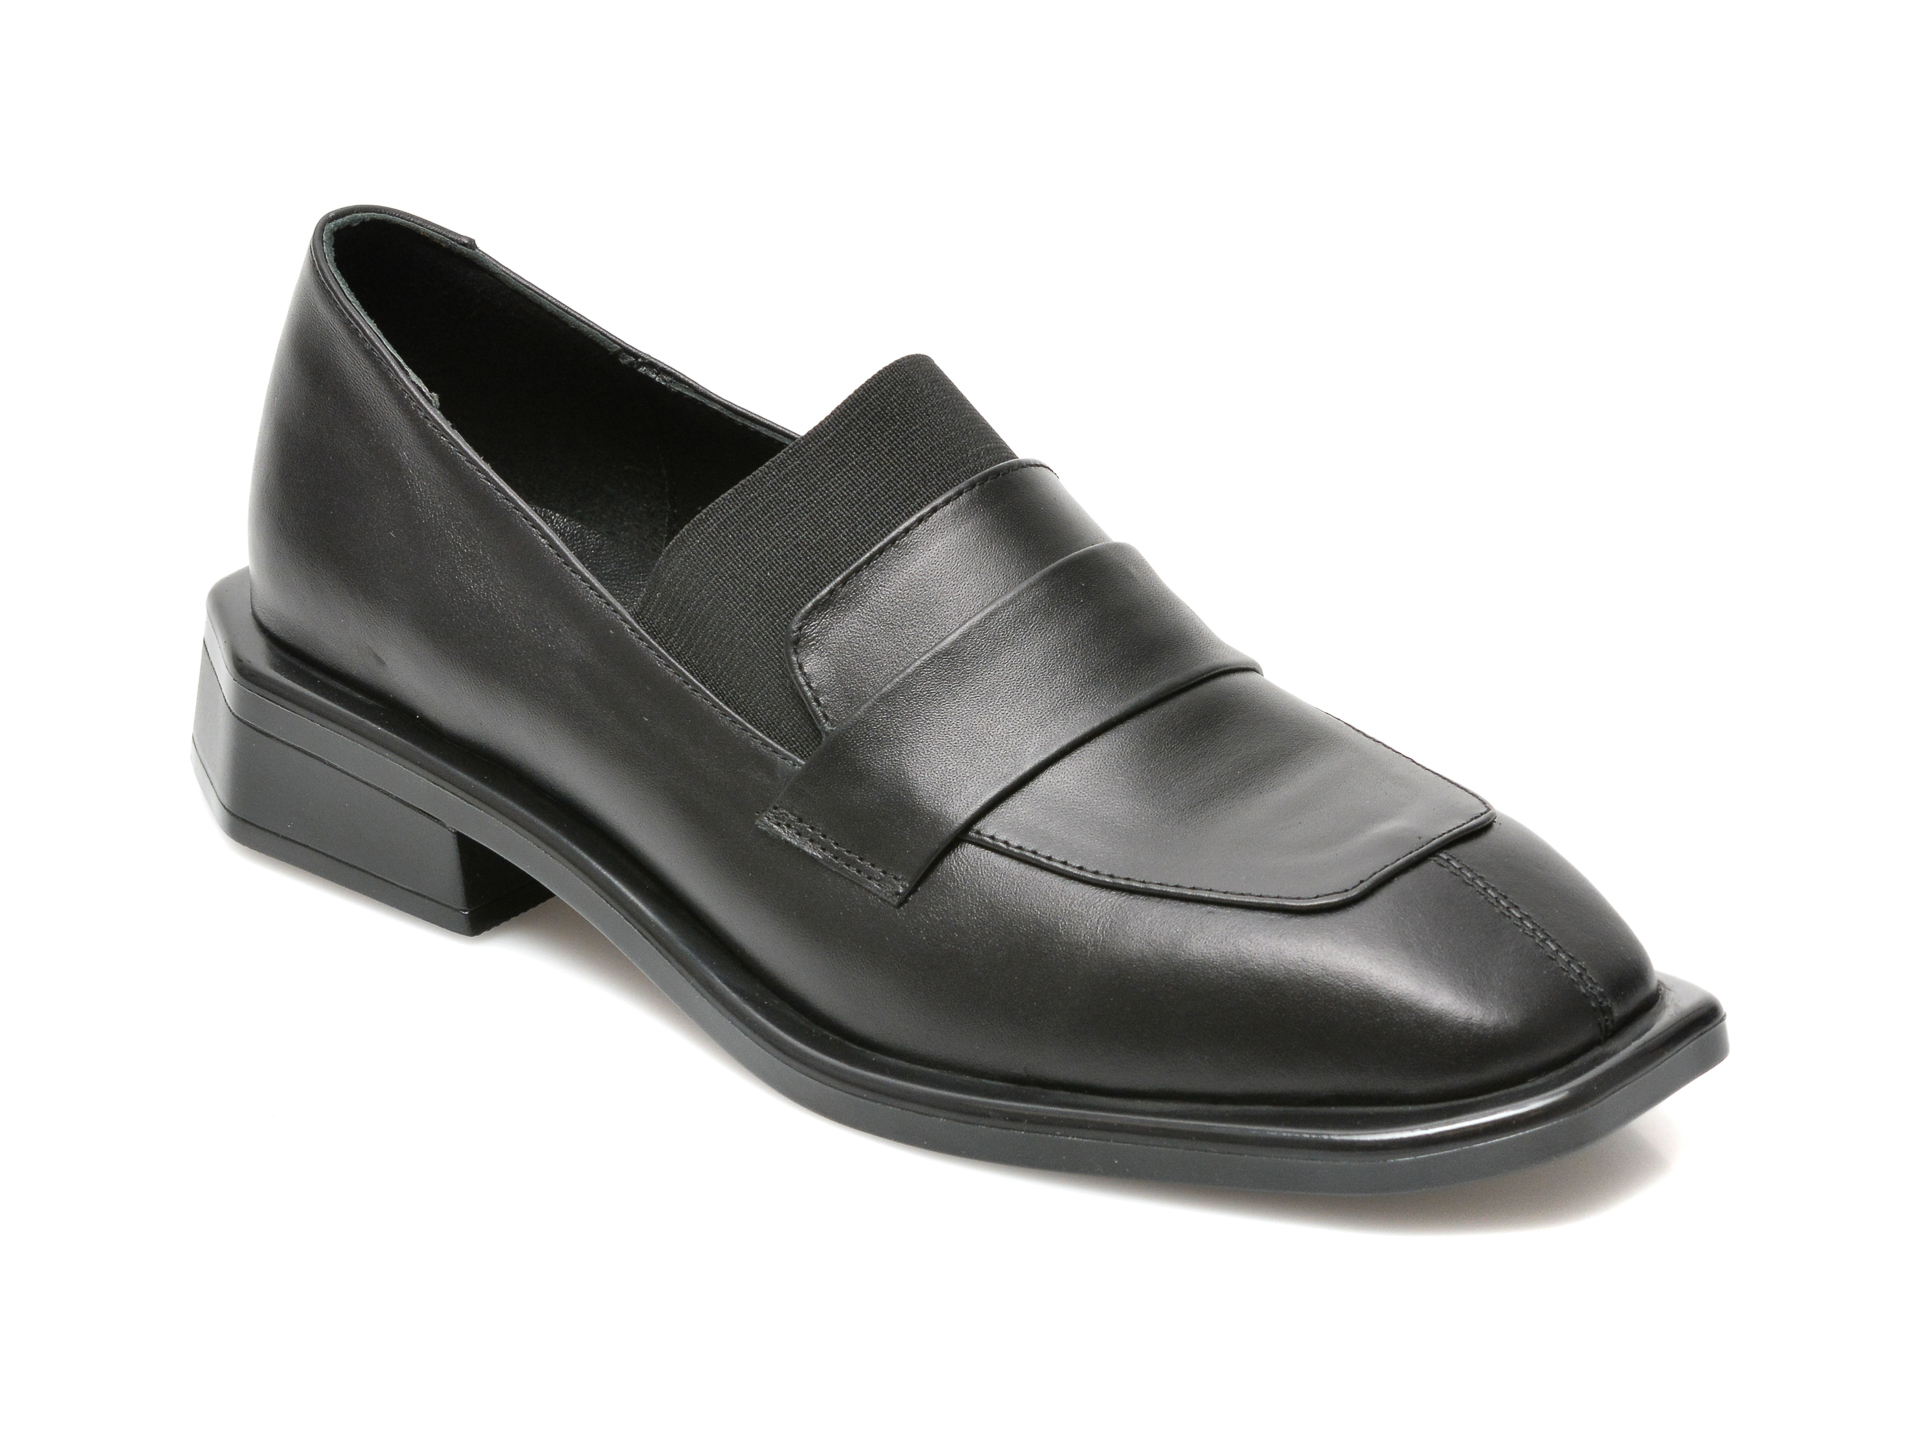 Pantofi LOLILELLA negri, 1309, din piele naturala